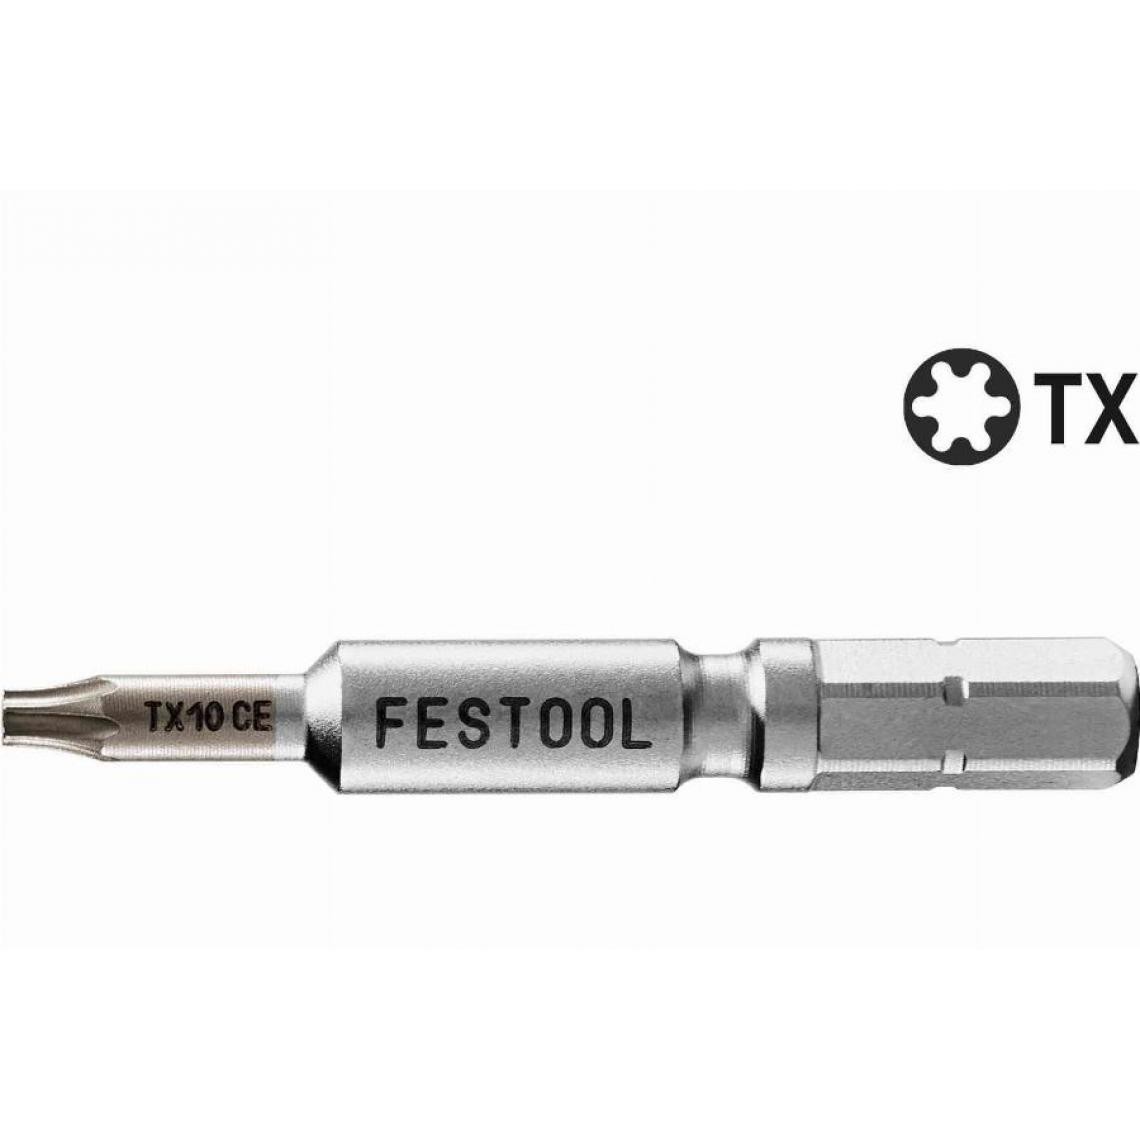 Festool - Embout TX 10-50 Centro FESTOOL - 2 pièces - 205076 - Accessoires vissage, perçage